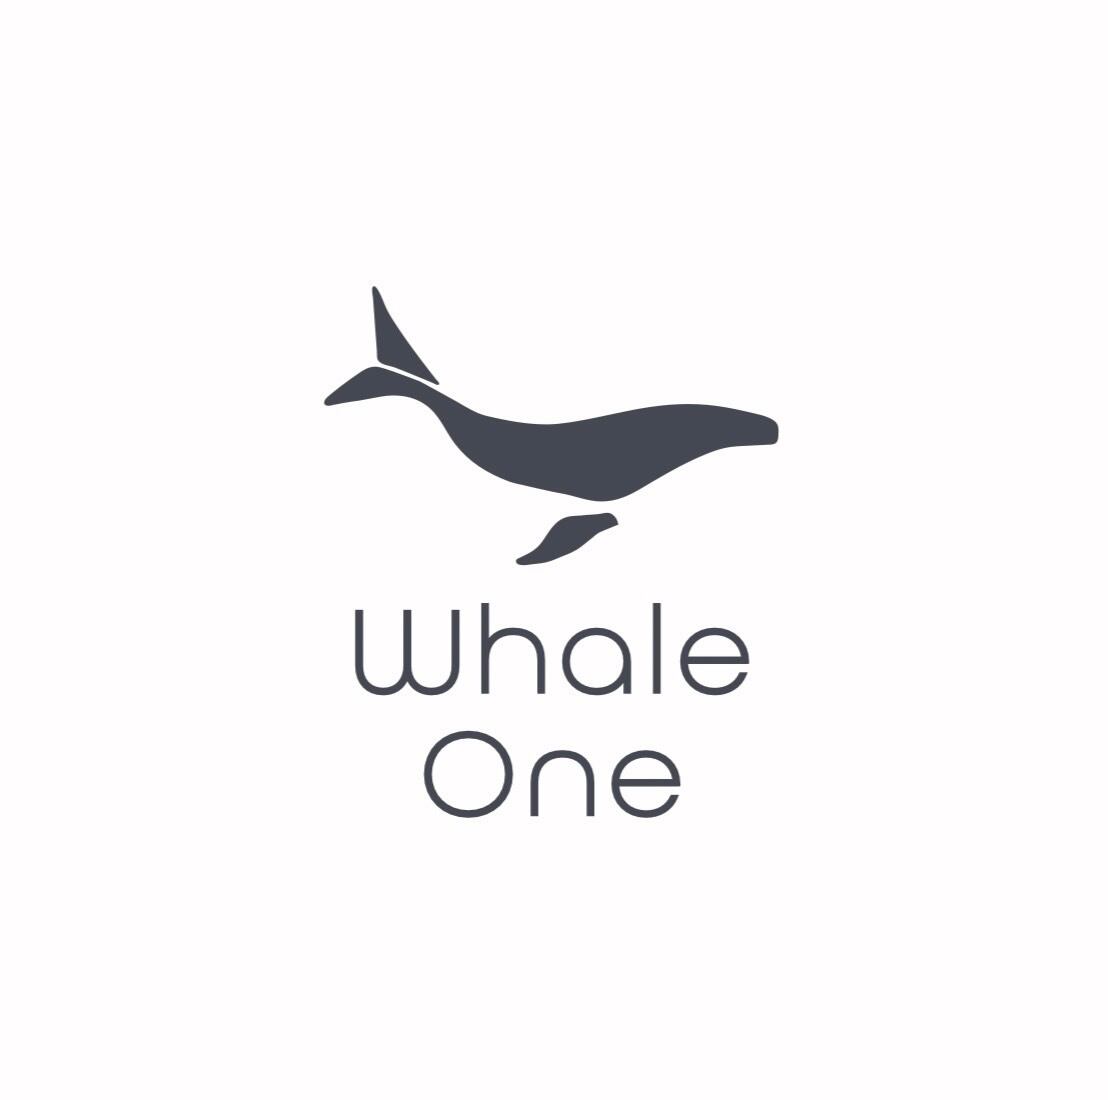 whaleone